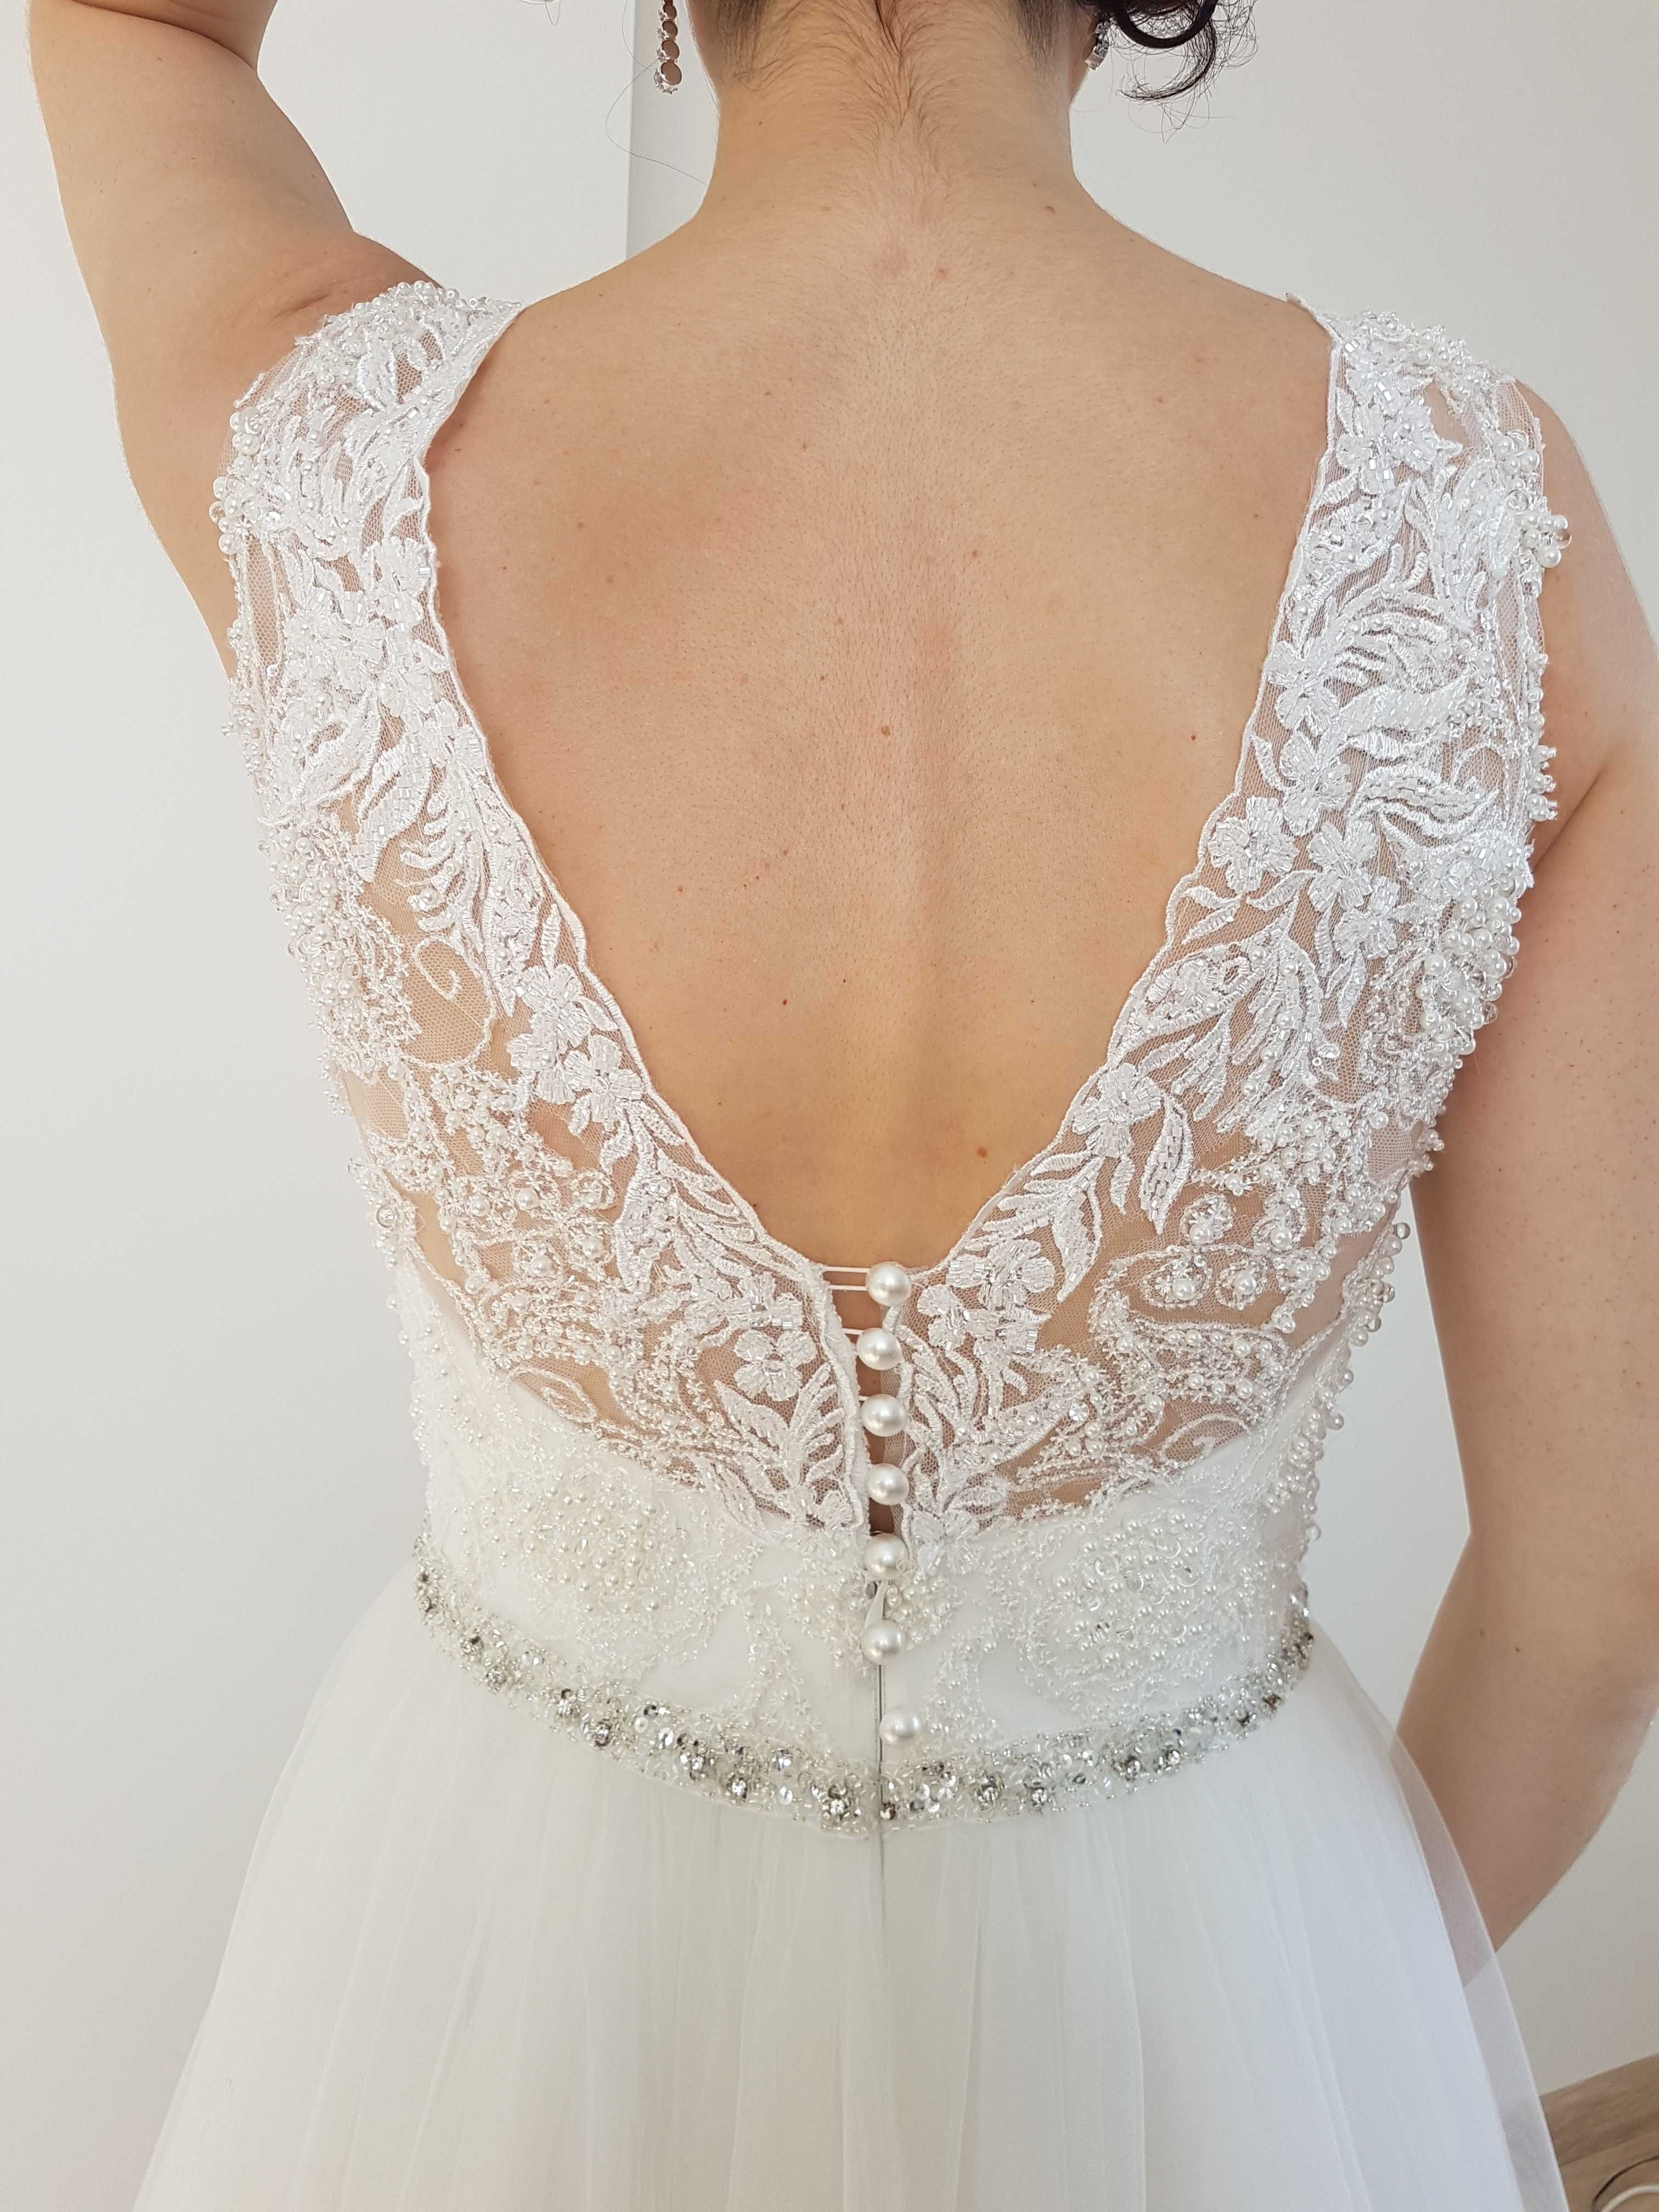 Piękna suknia ślubna w stanie idealnym (bez wesela) rozmiar 38